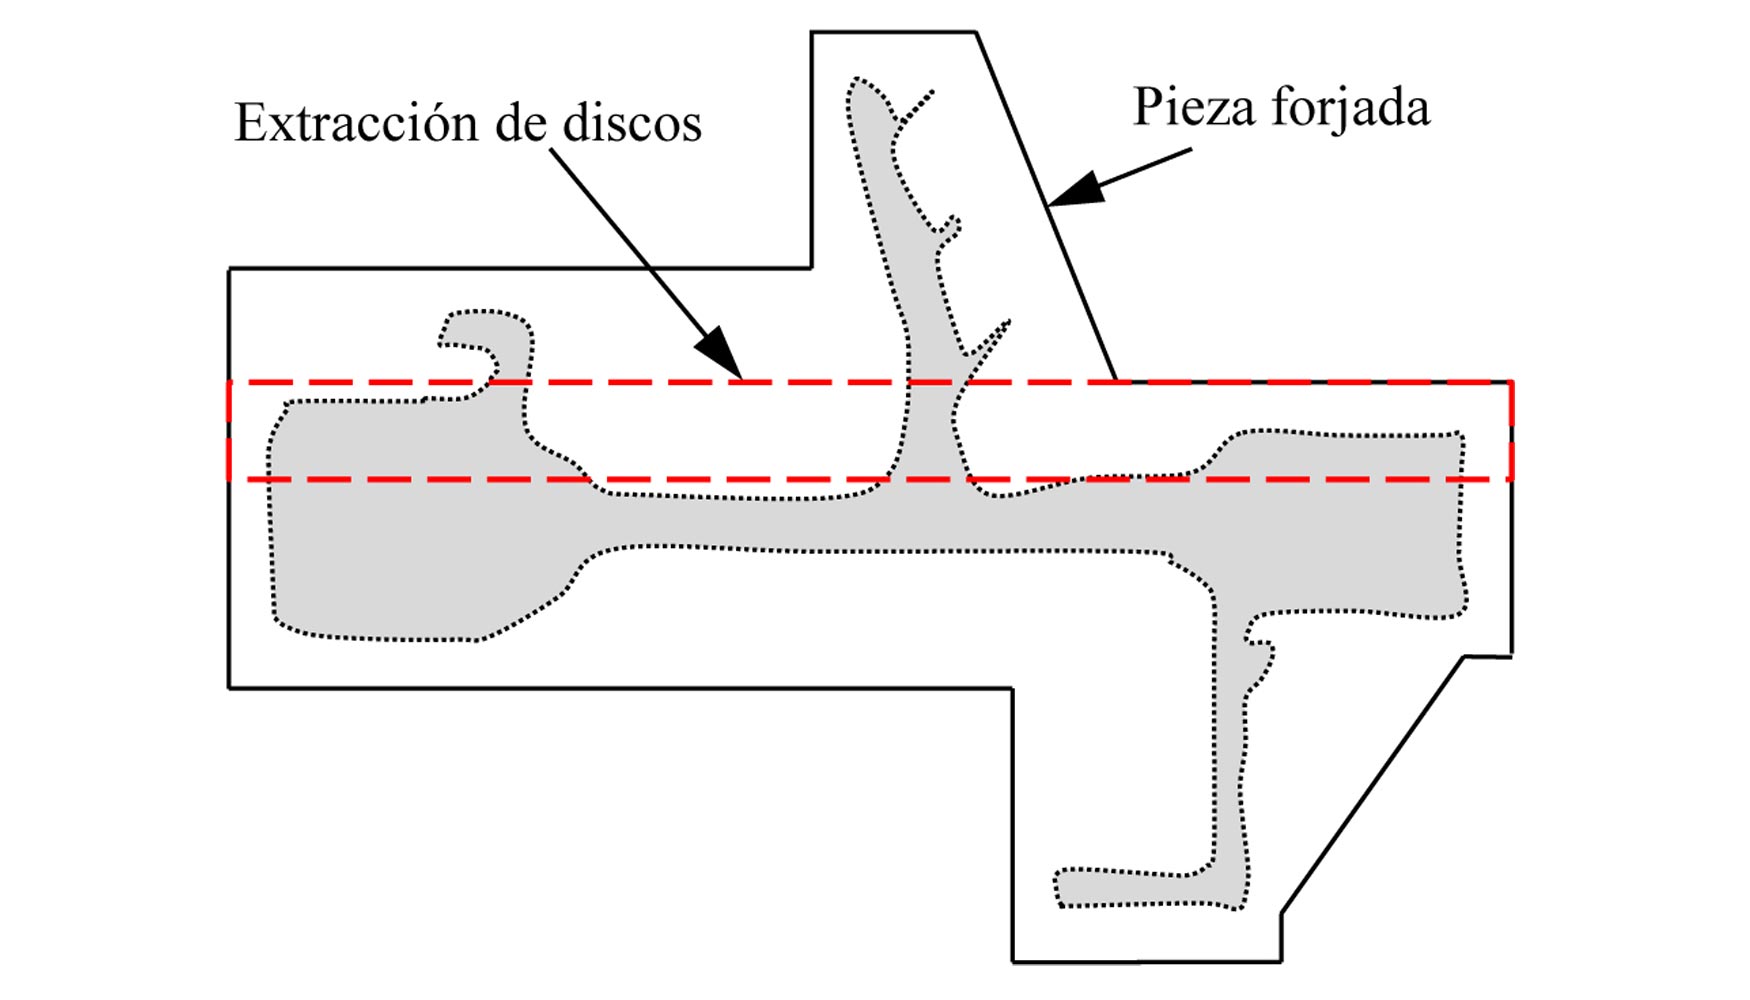 Figura 2. Representacin esquemtica de la pieza forjada y extraccin de discos